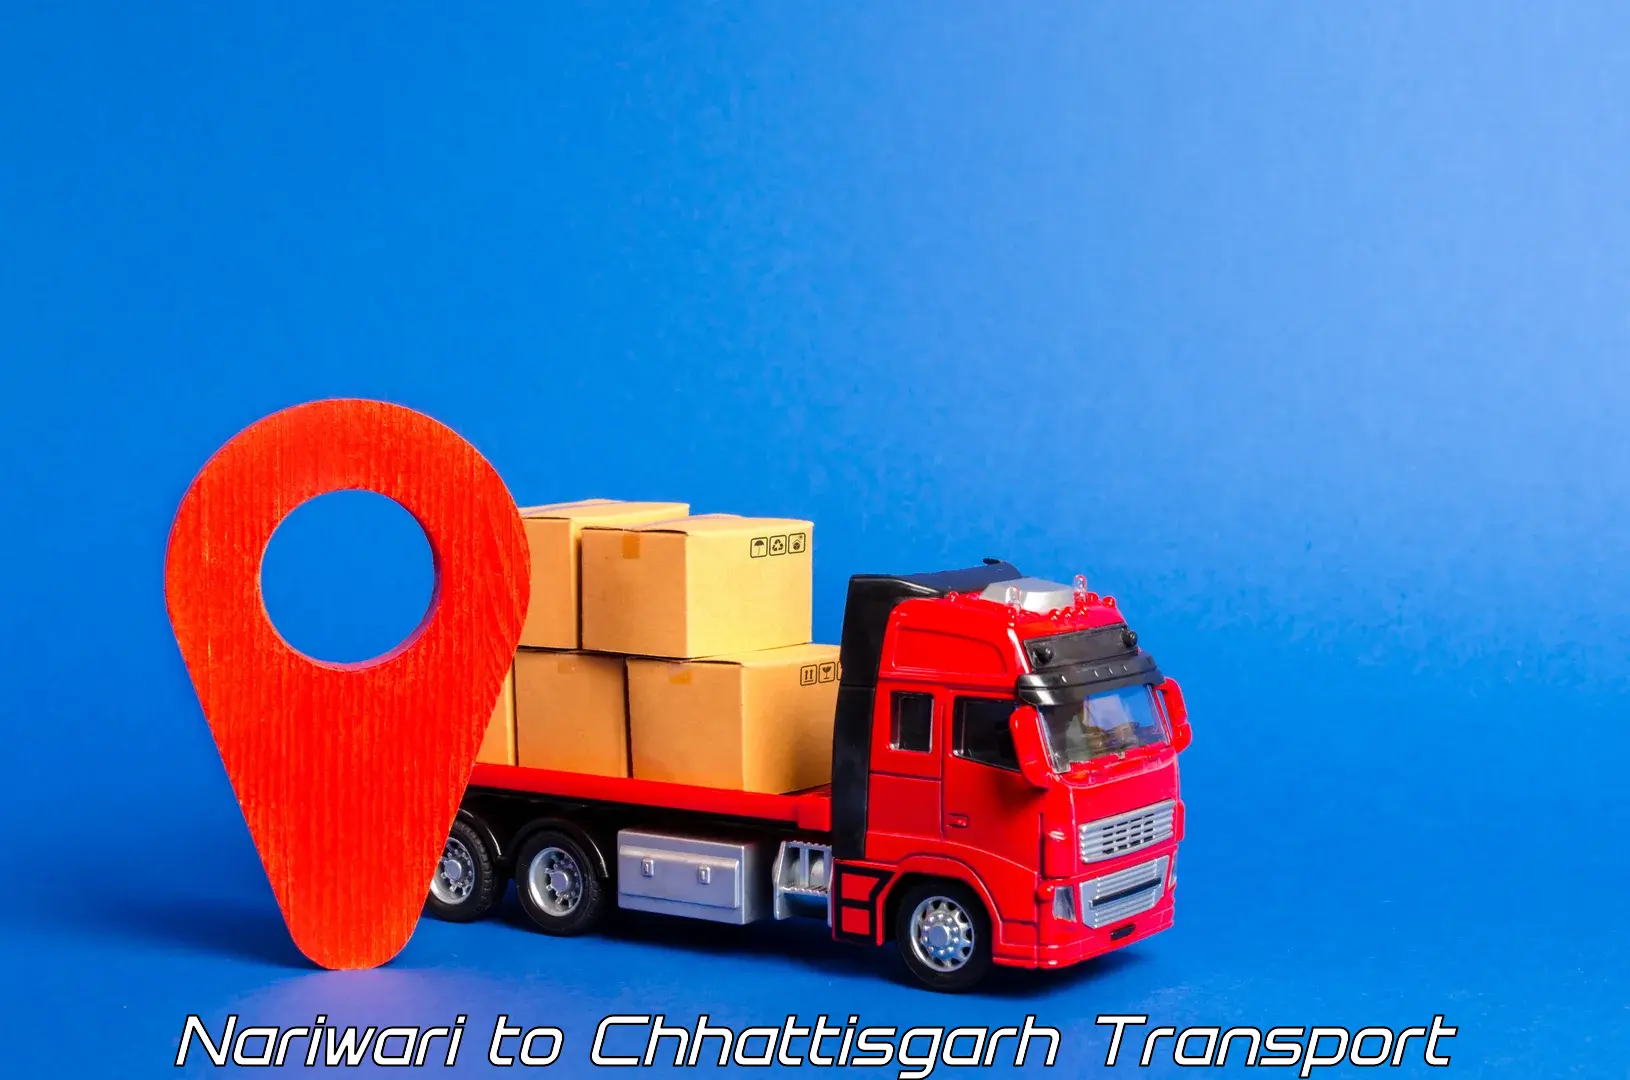 Transport in sharing Nariwari to Janjgir Champa